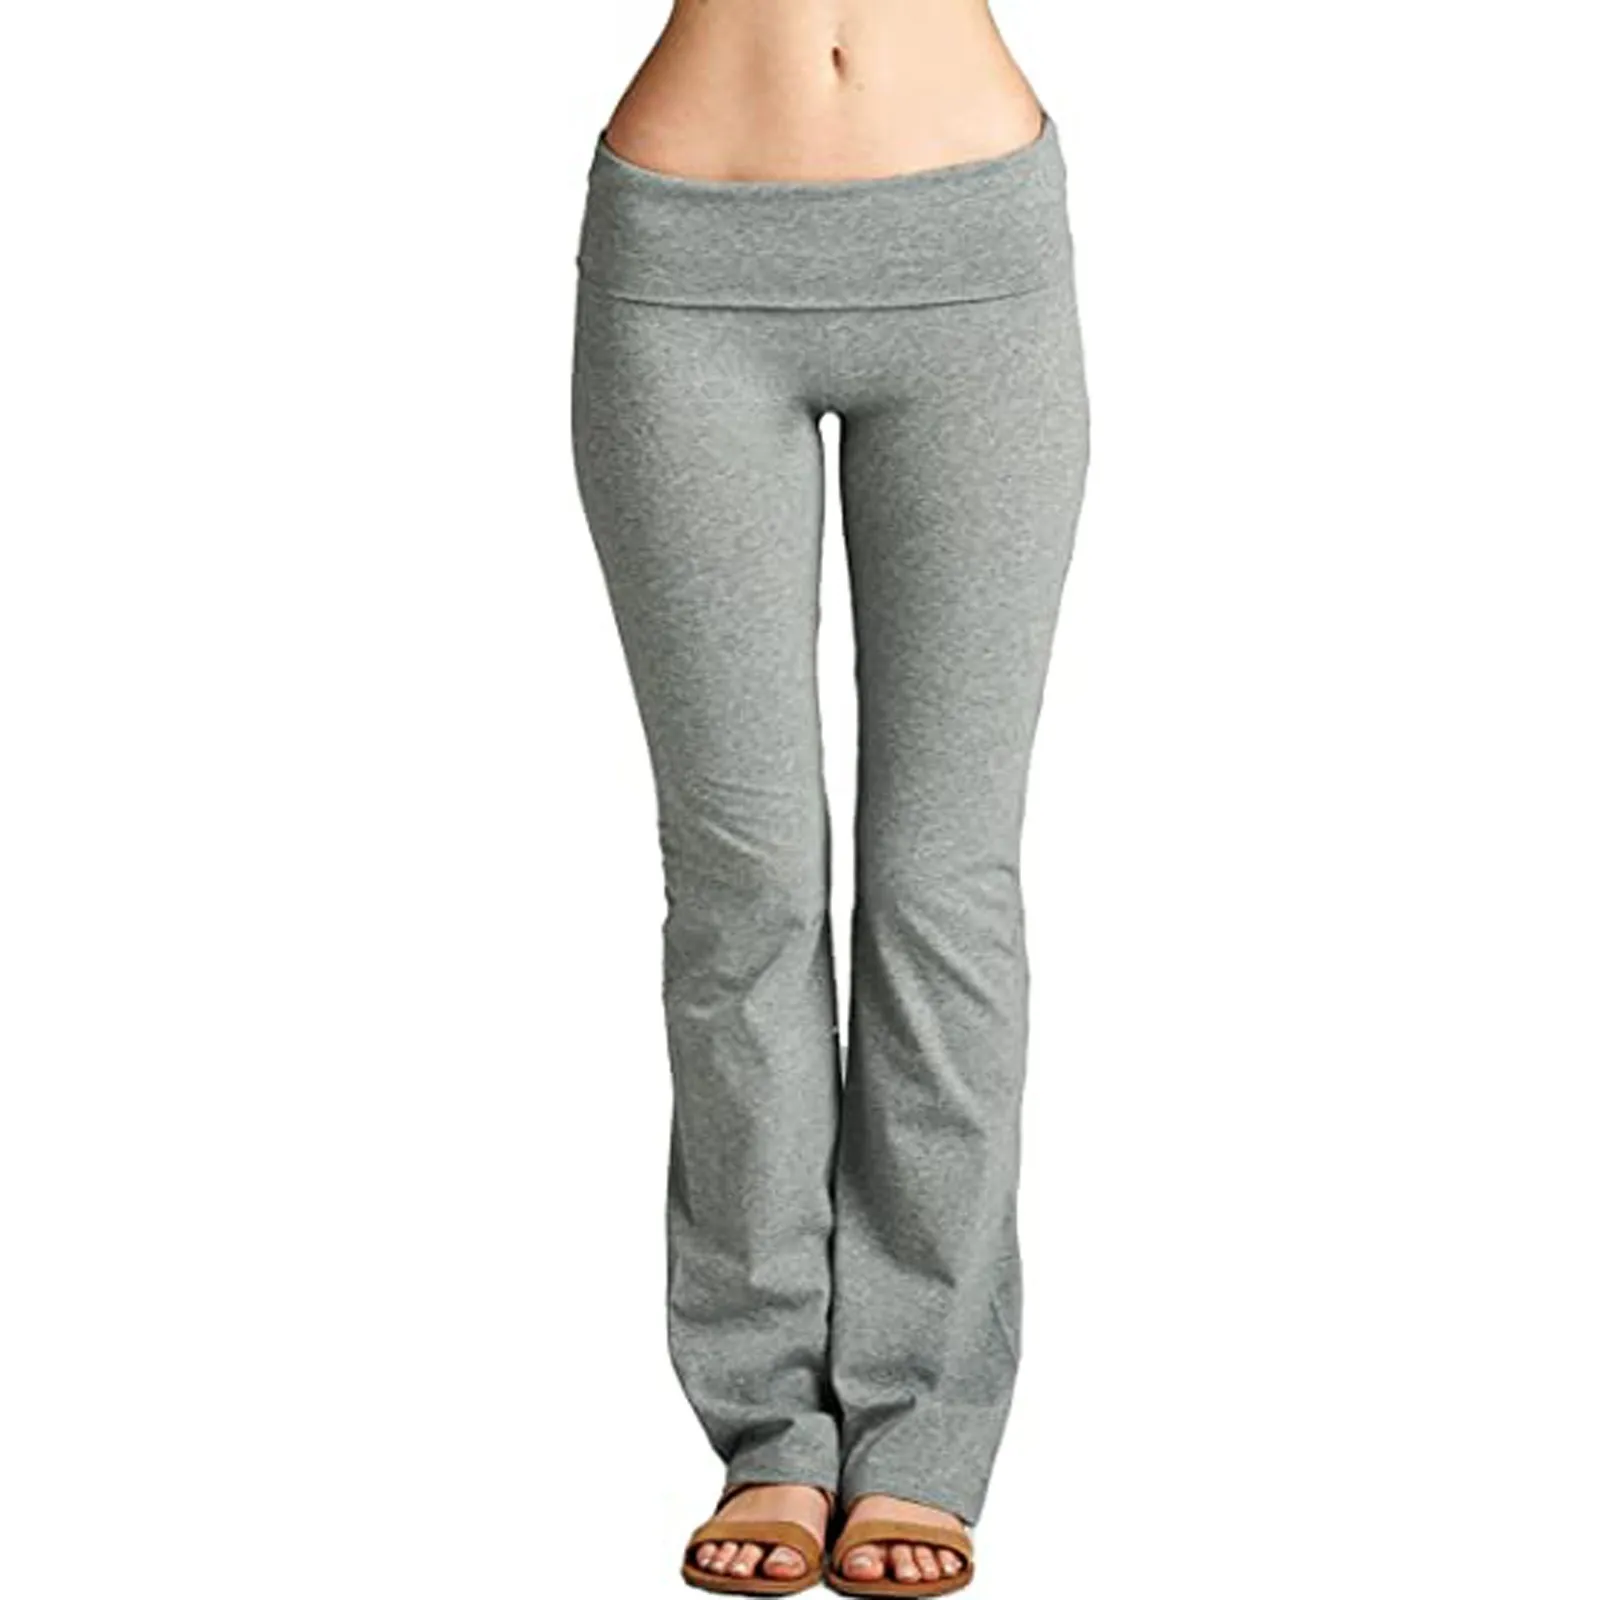 Kadın Streç Yoga Pantolon Katı Yüksek Bel Yoga Tayt Dans Spor Bayan Koşu Spor Pantolon Gevşek Spor Giyim S-3XL Görüntü 2